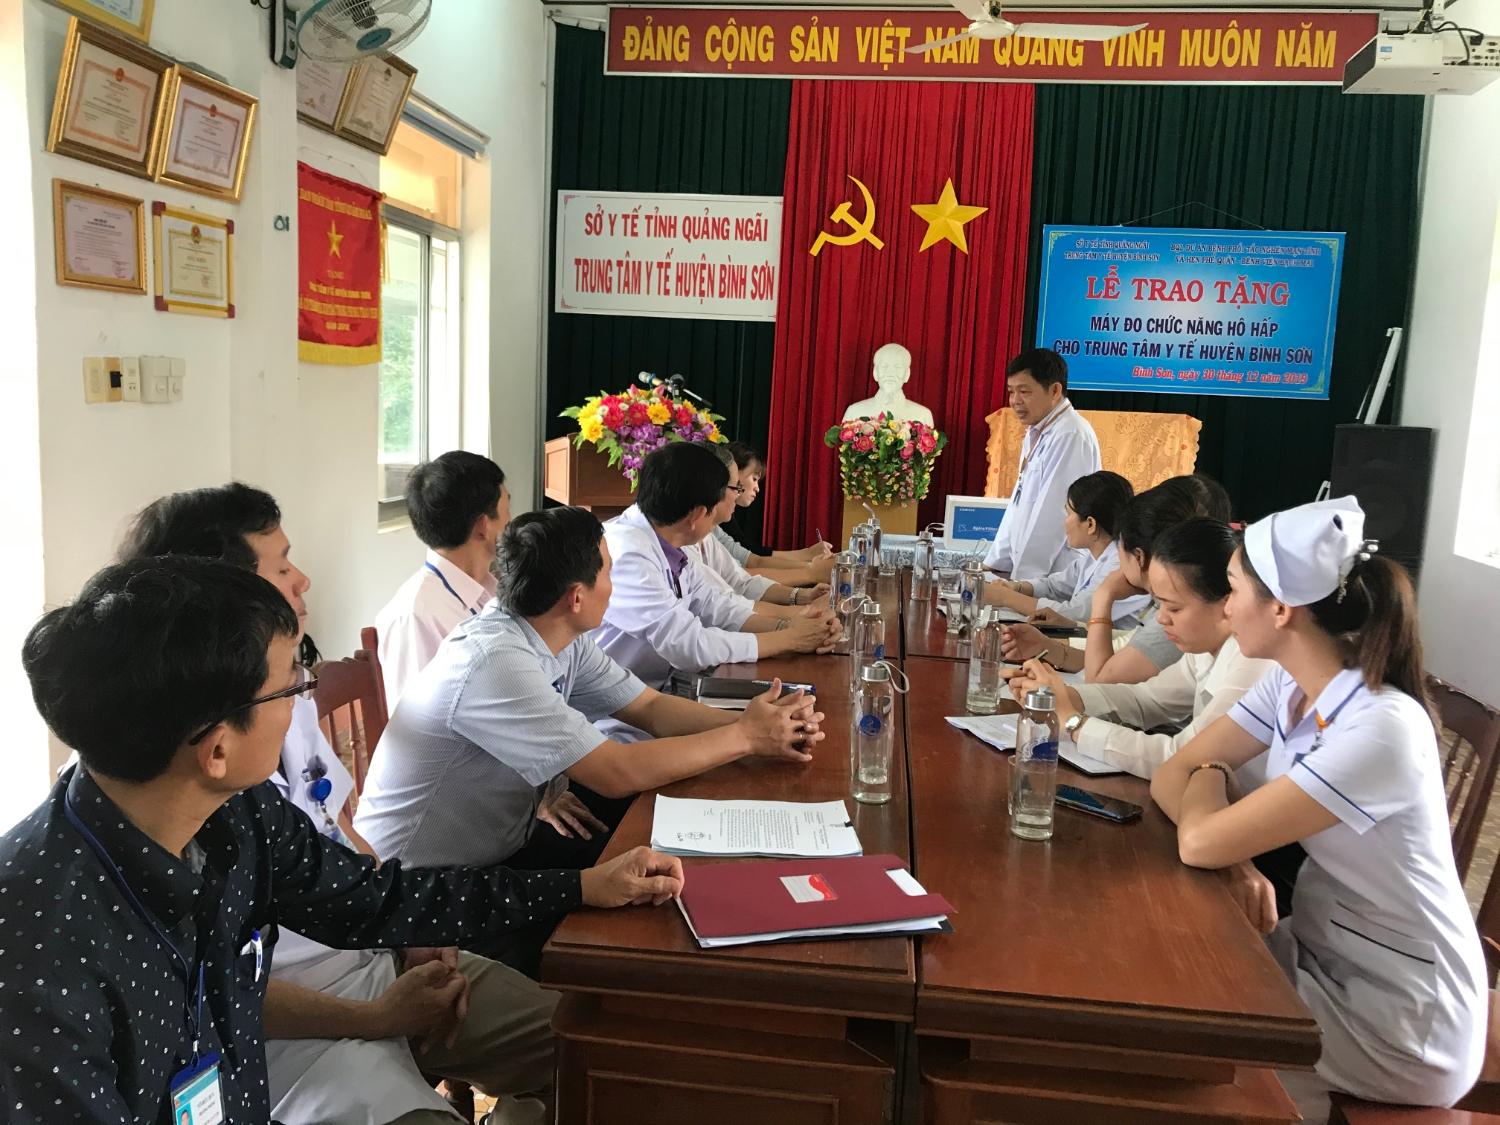 BSCKII Võ Hùng Viễn – Giám đốc Trung tâm Y tế huyện Bình Sơn phát biểu tại buổi Lễ